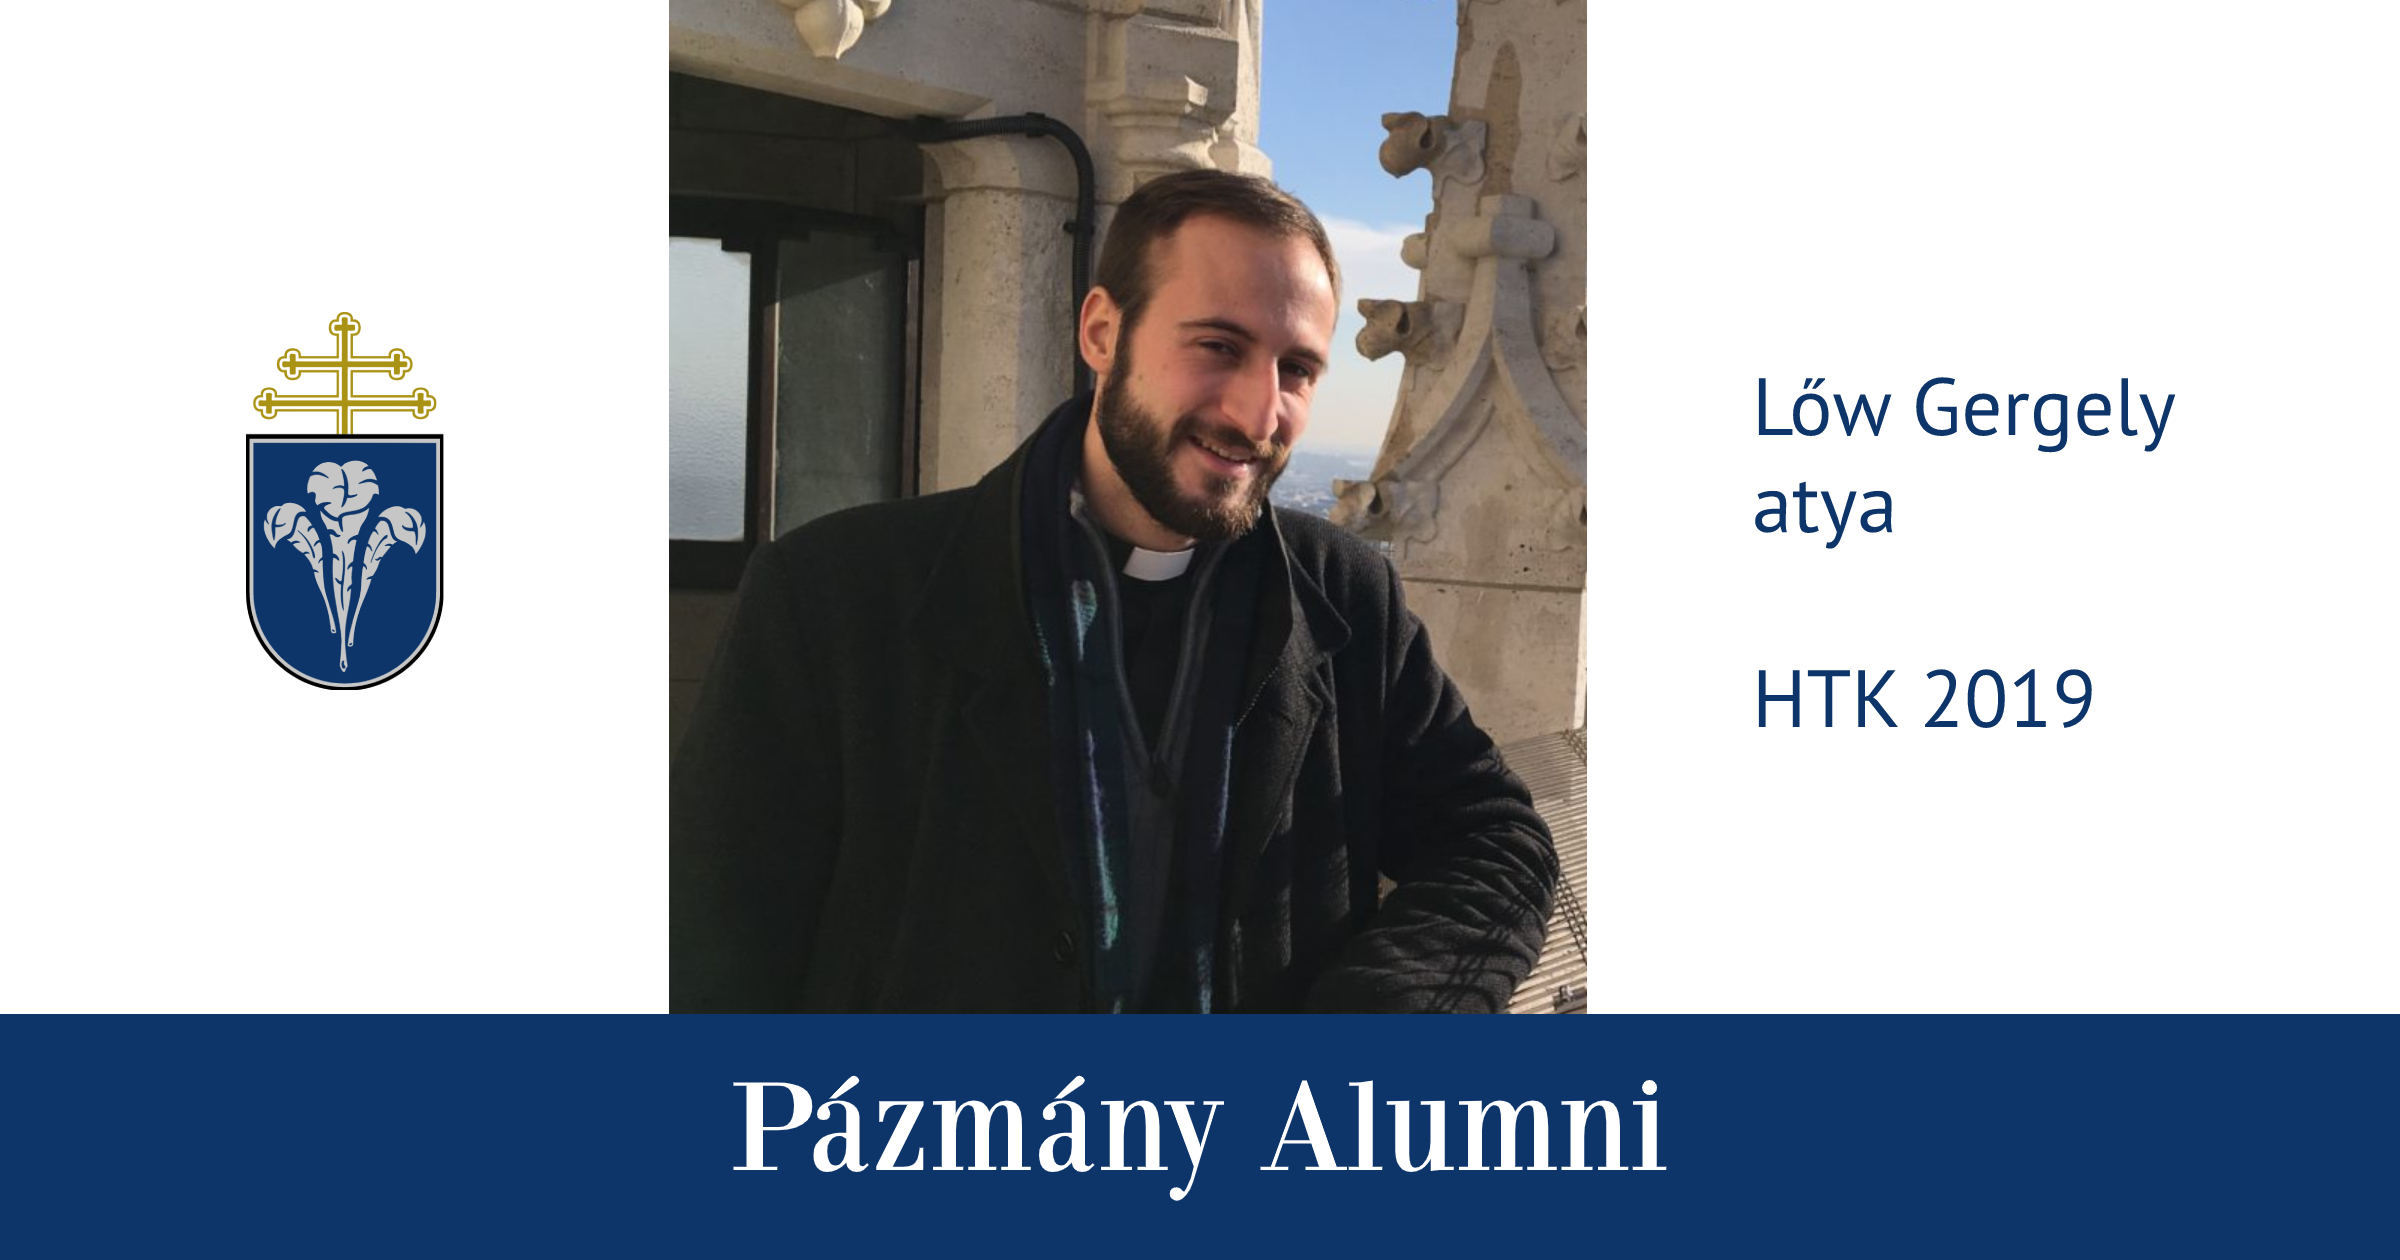 Pázmány Alumni: interjú Lőw Gergely atyával, a HTK egykori hallgatójával